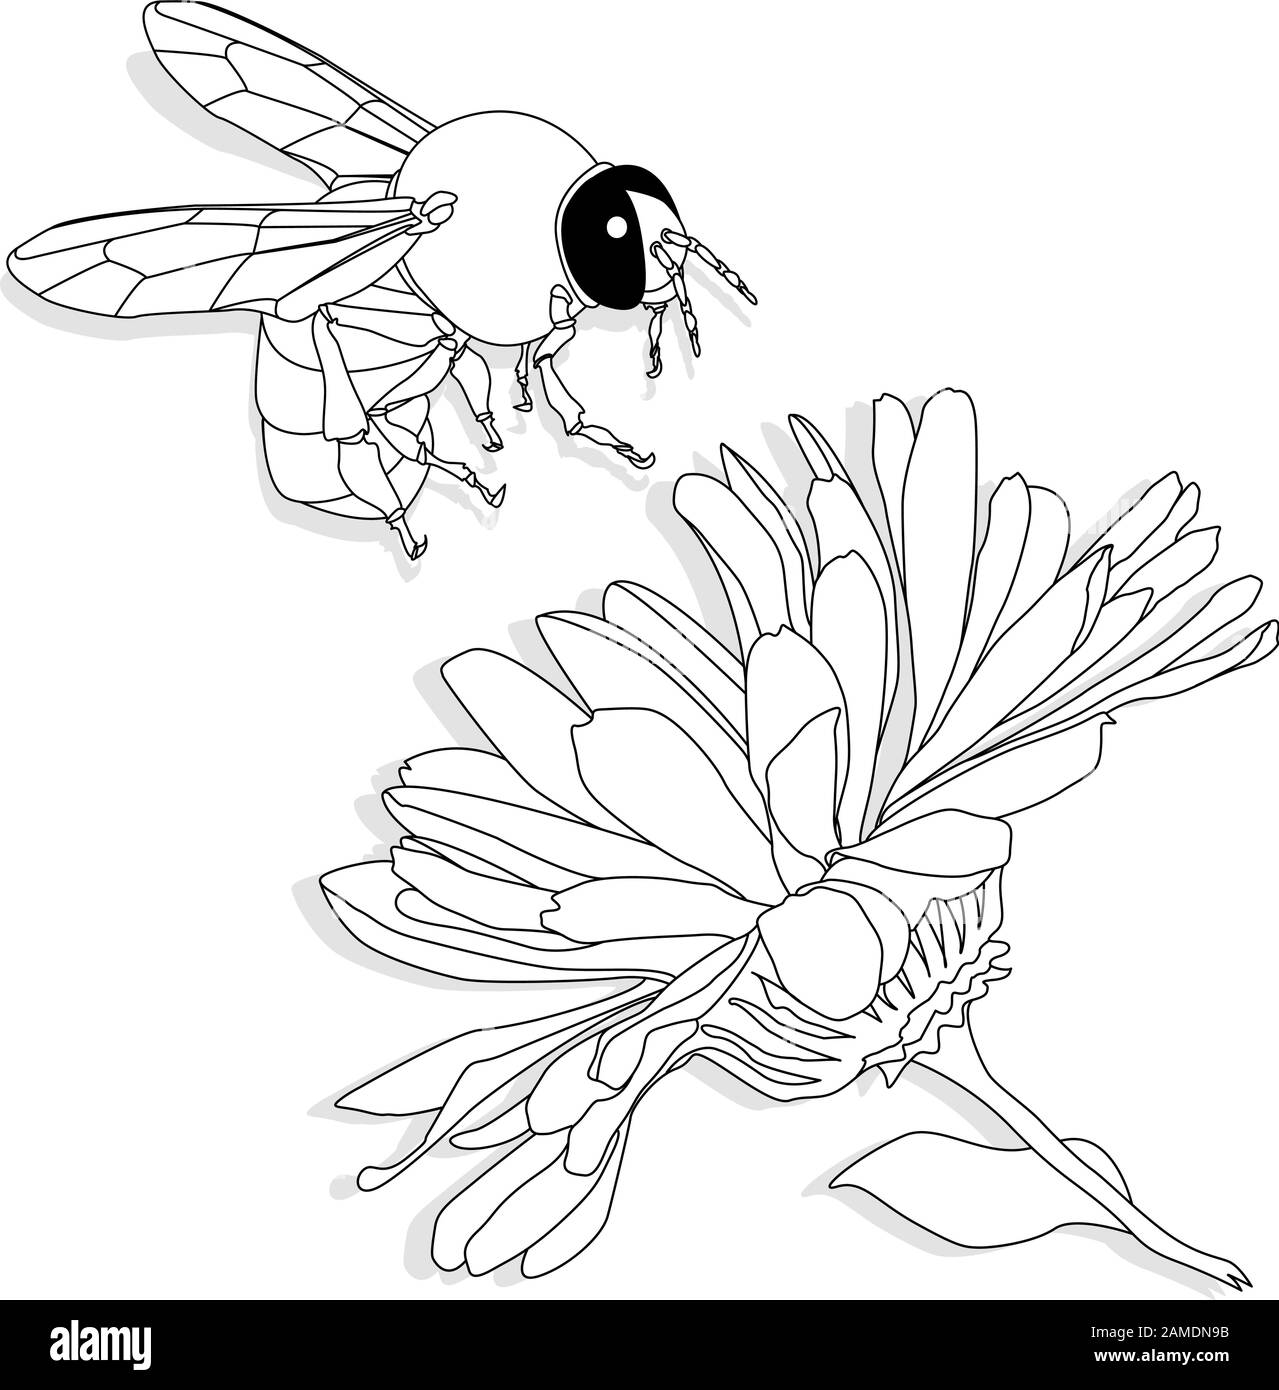 Immagine vettoriale di ape di miele su sfondo bianco. Immagine a colori. Illustrazione Vettoriale